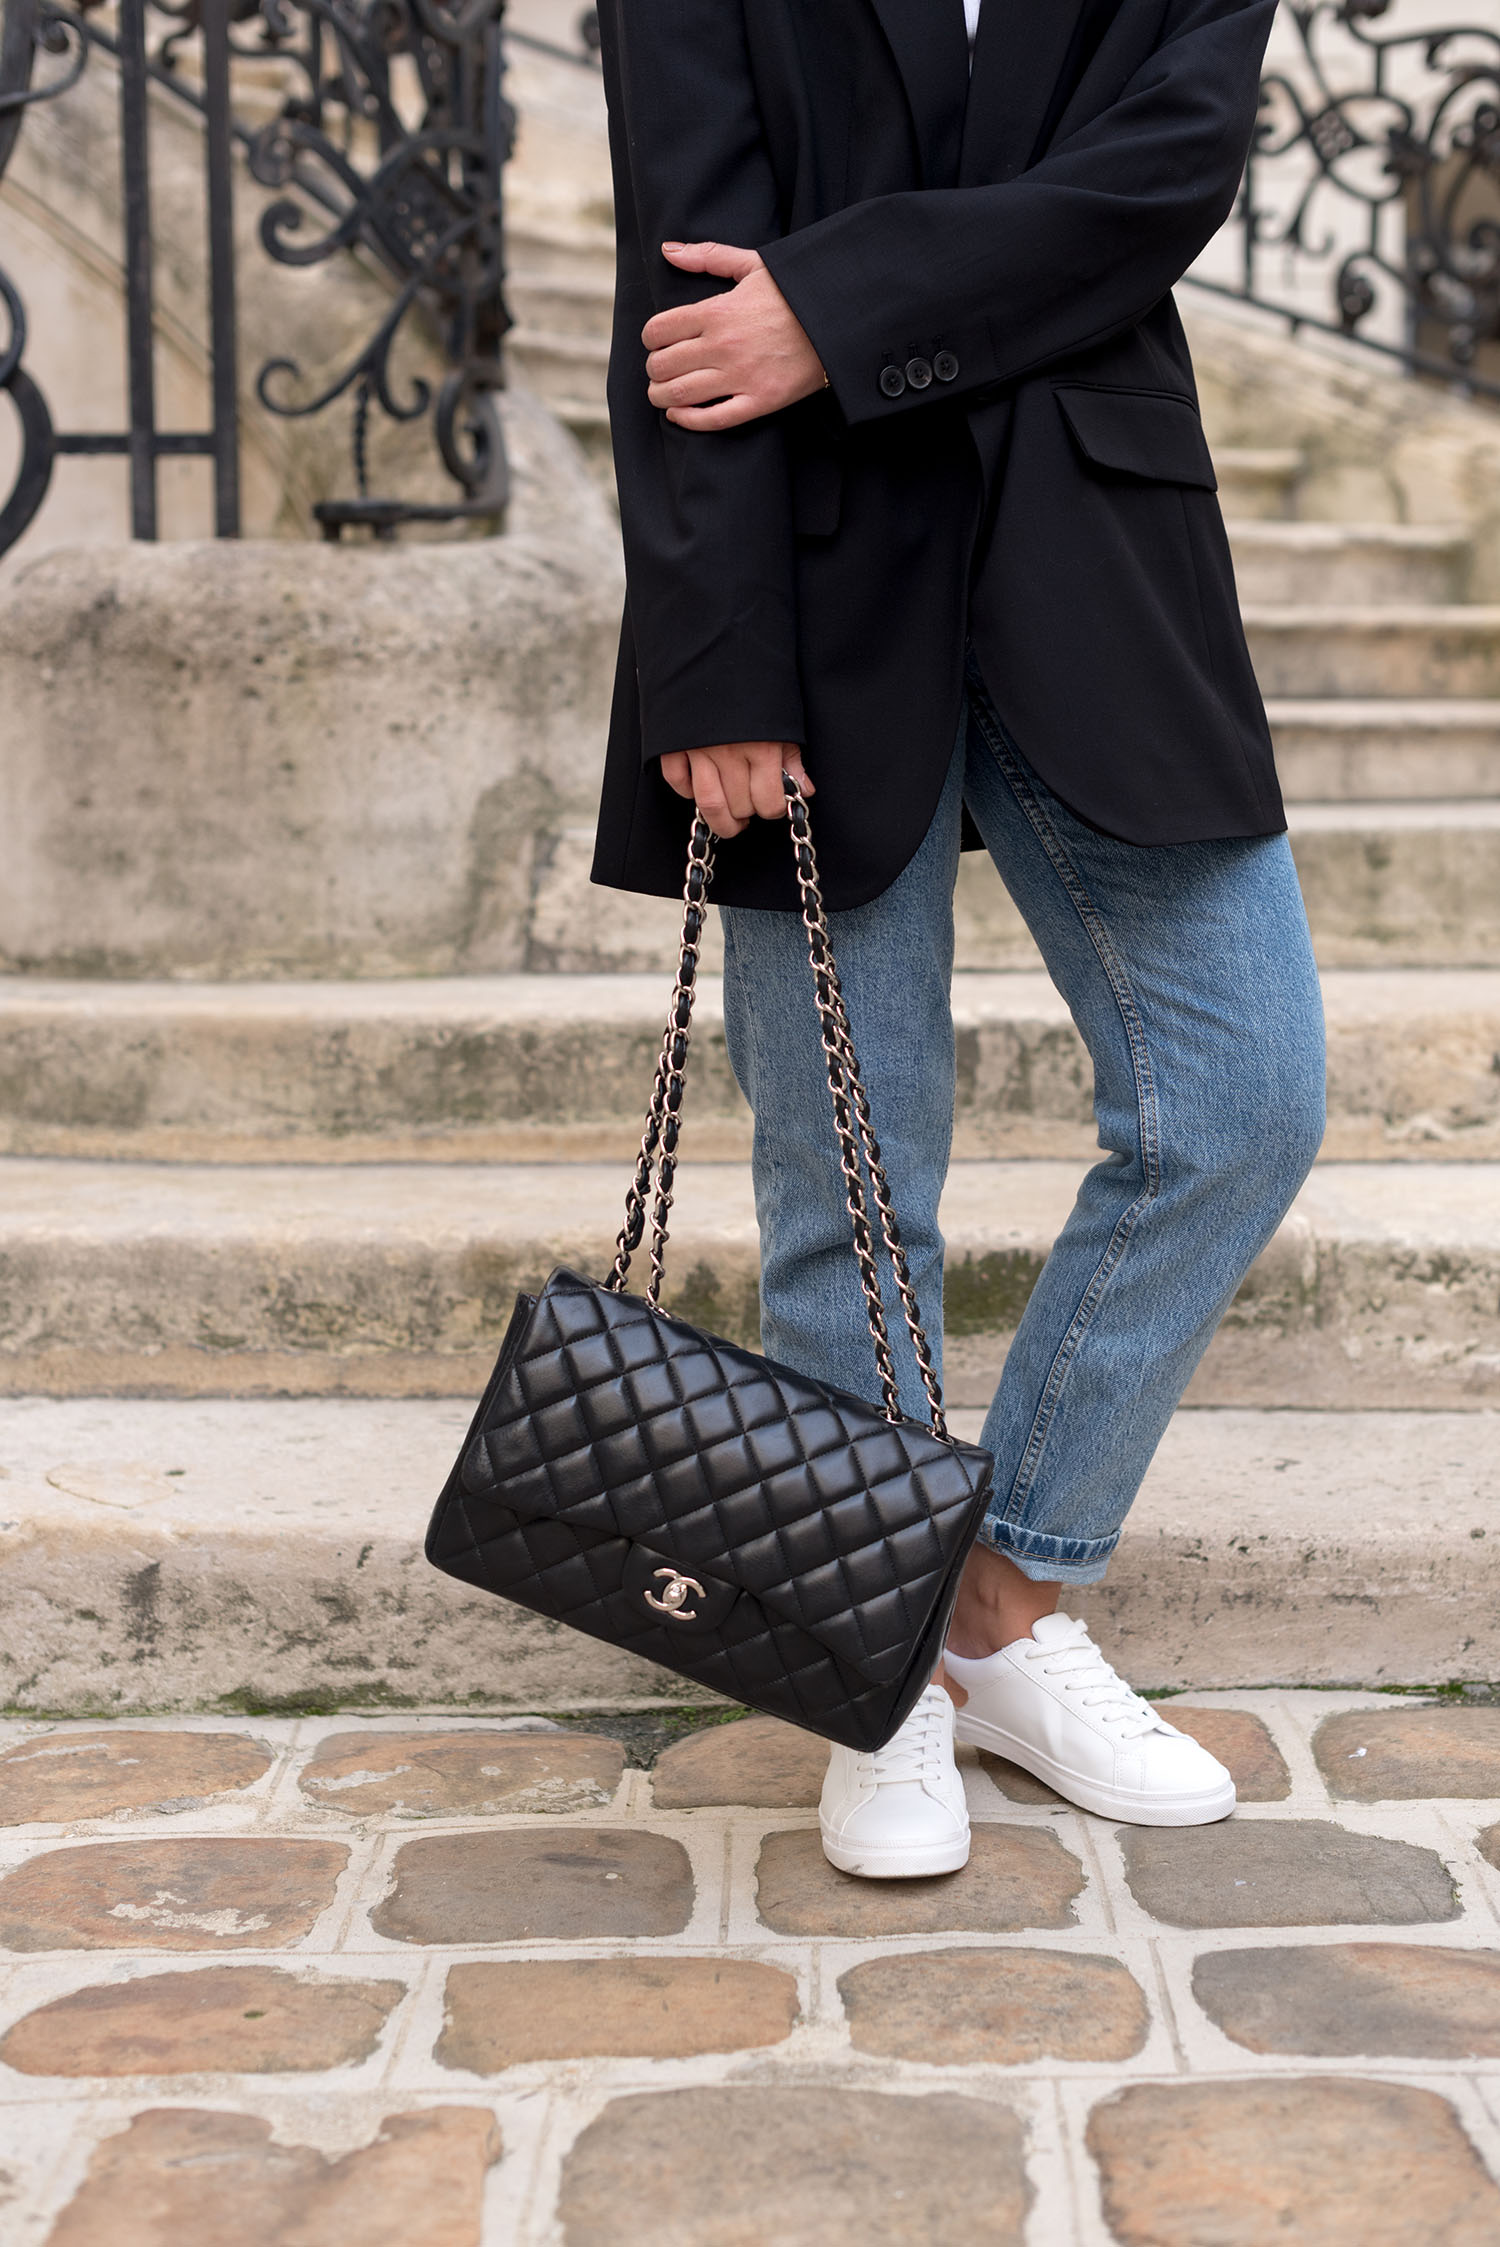 Coco & Vera - Chanel jumbo handbag, Zara jeans, Mango sneakers